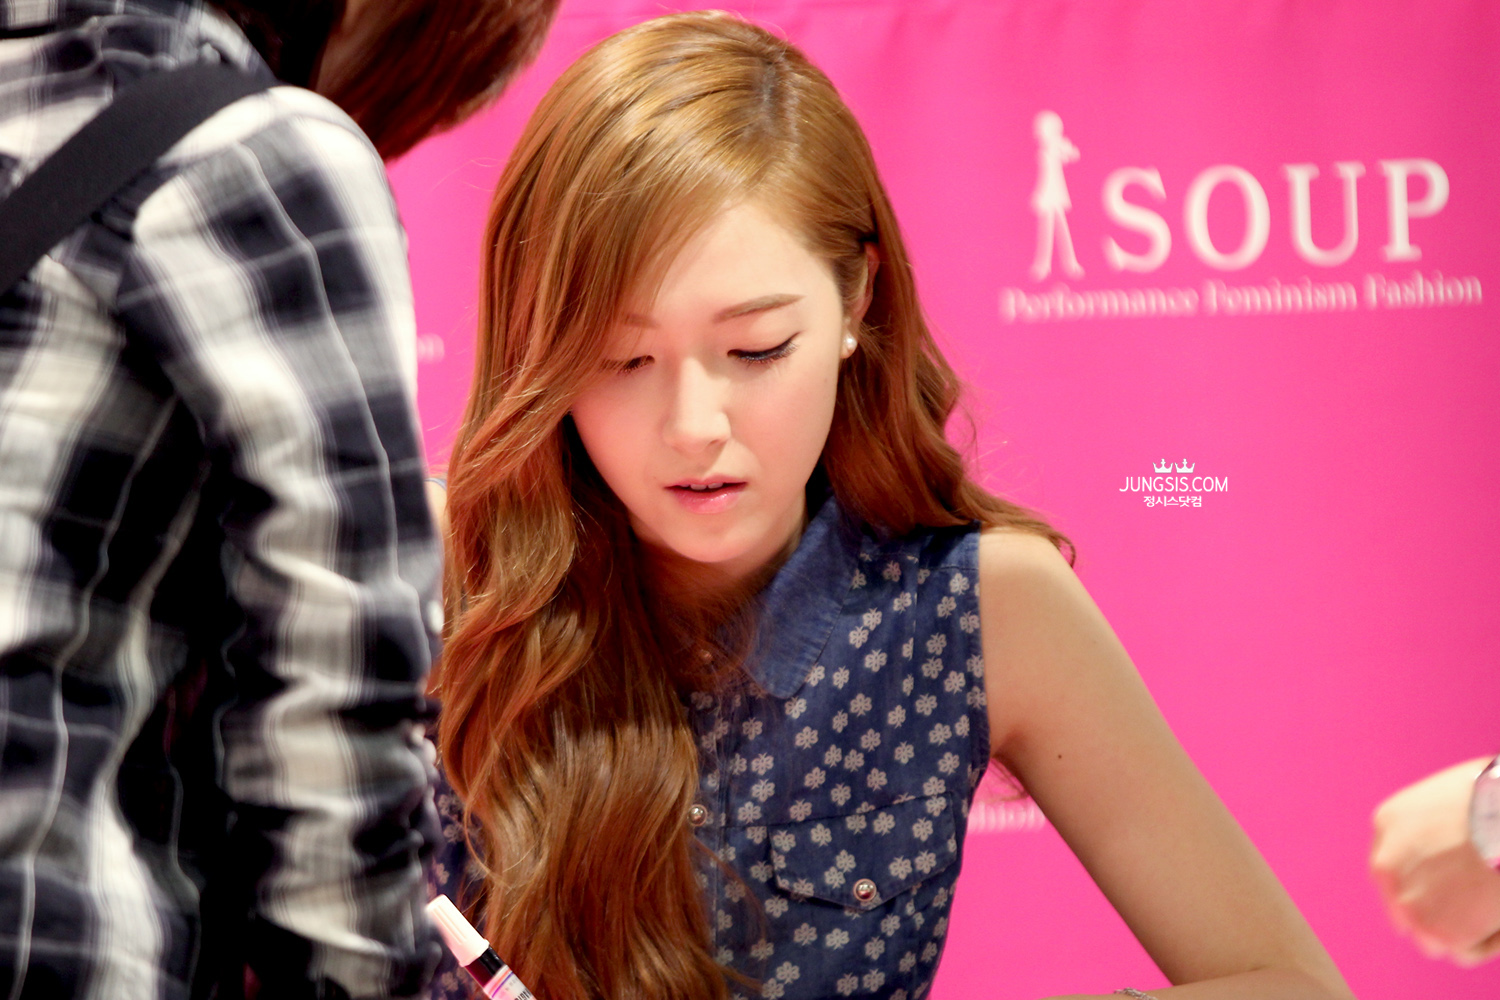 [PIC][04-04-2014]Jessica tham dự buổi fansign cho thương hiệu "SOUP" vào trưa nay - Page 3 2279594353A4484E2AF463